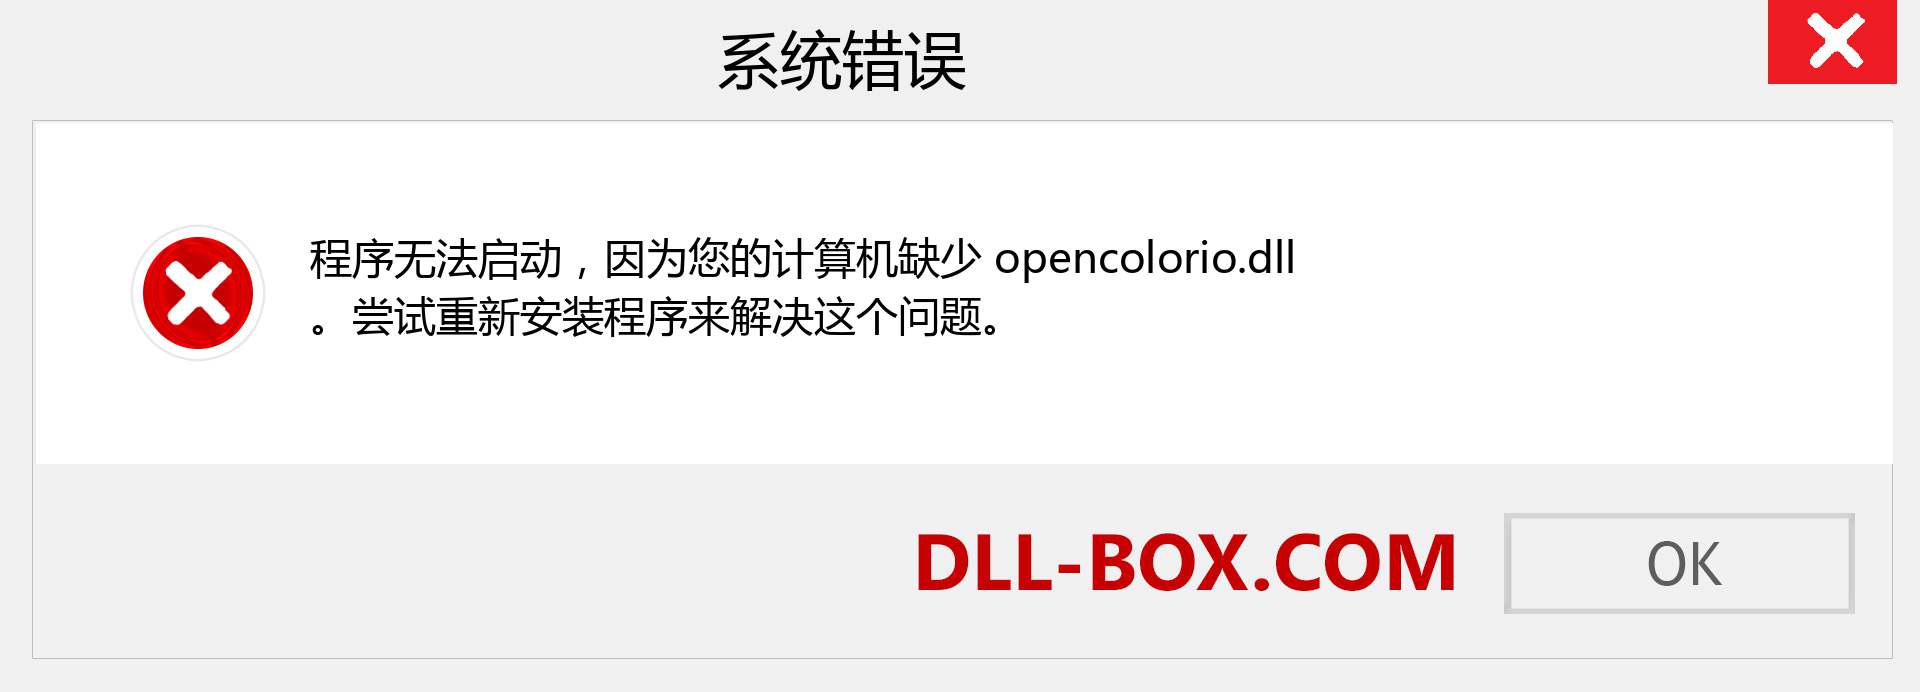 opencolorio.dll 文件丢失？。 适用于 Windows 7、8、10 的下载 - 修复 Windows、照片、图像上的 opencolorio dll 丢失错误